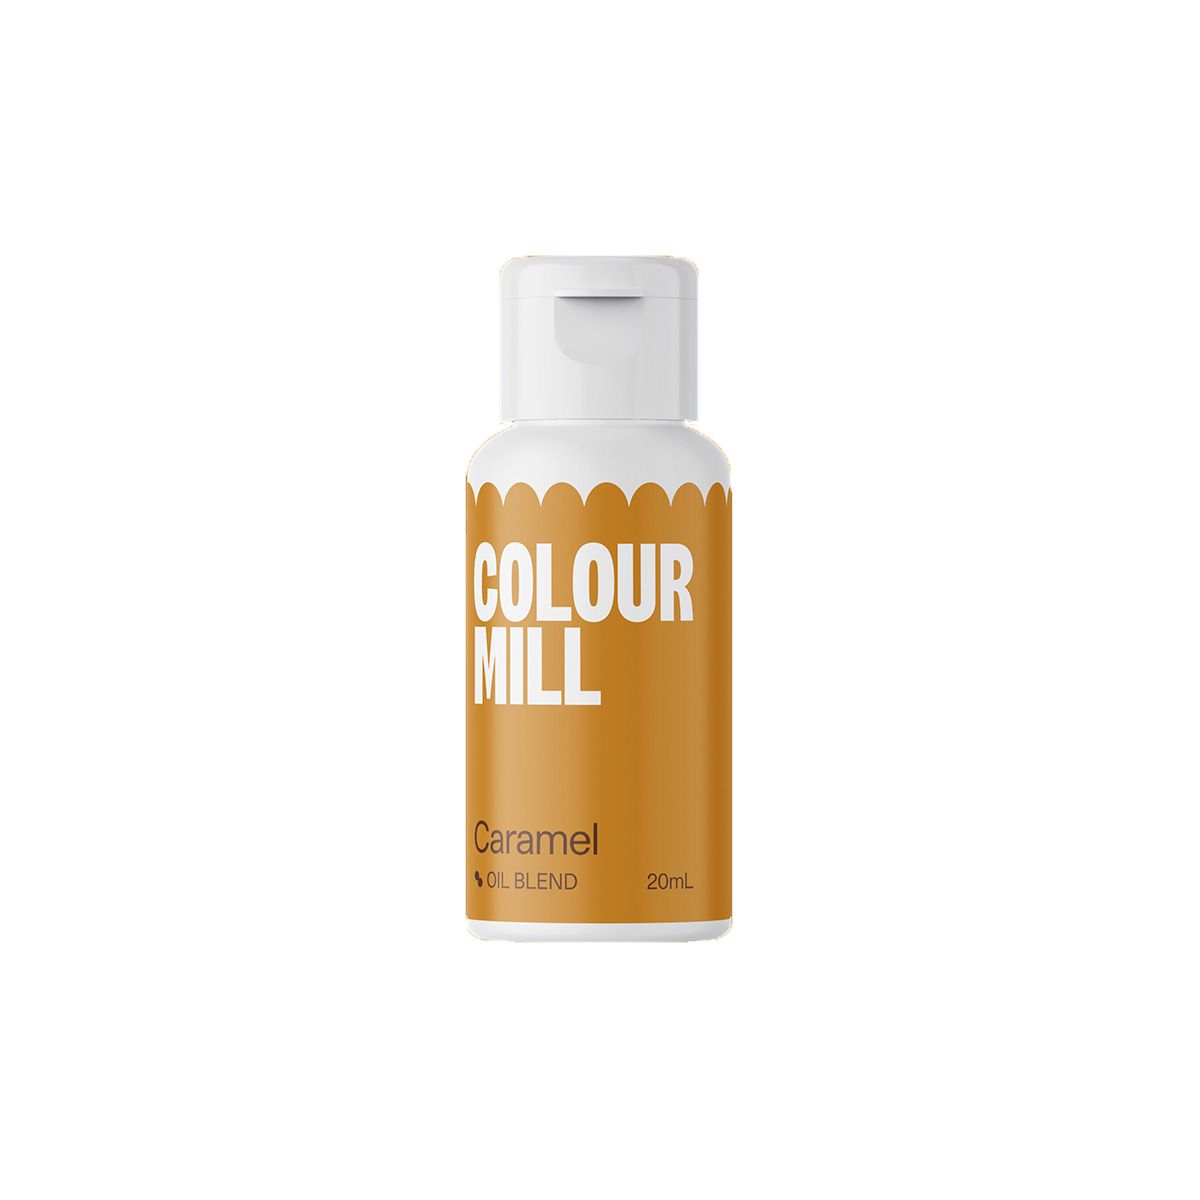 Billede af Colour Mill - Caramel Oliefarve 20ml